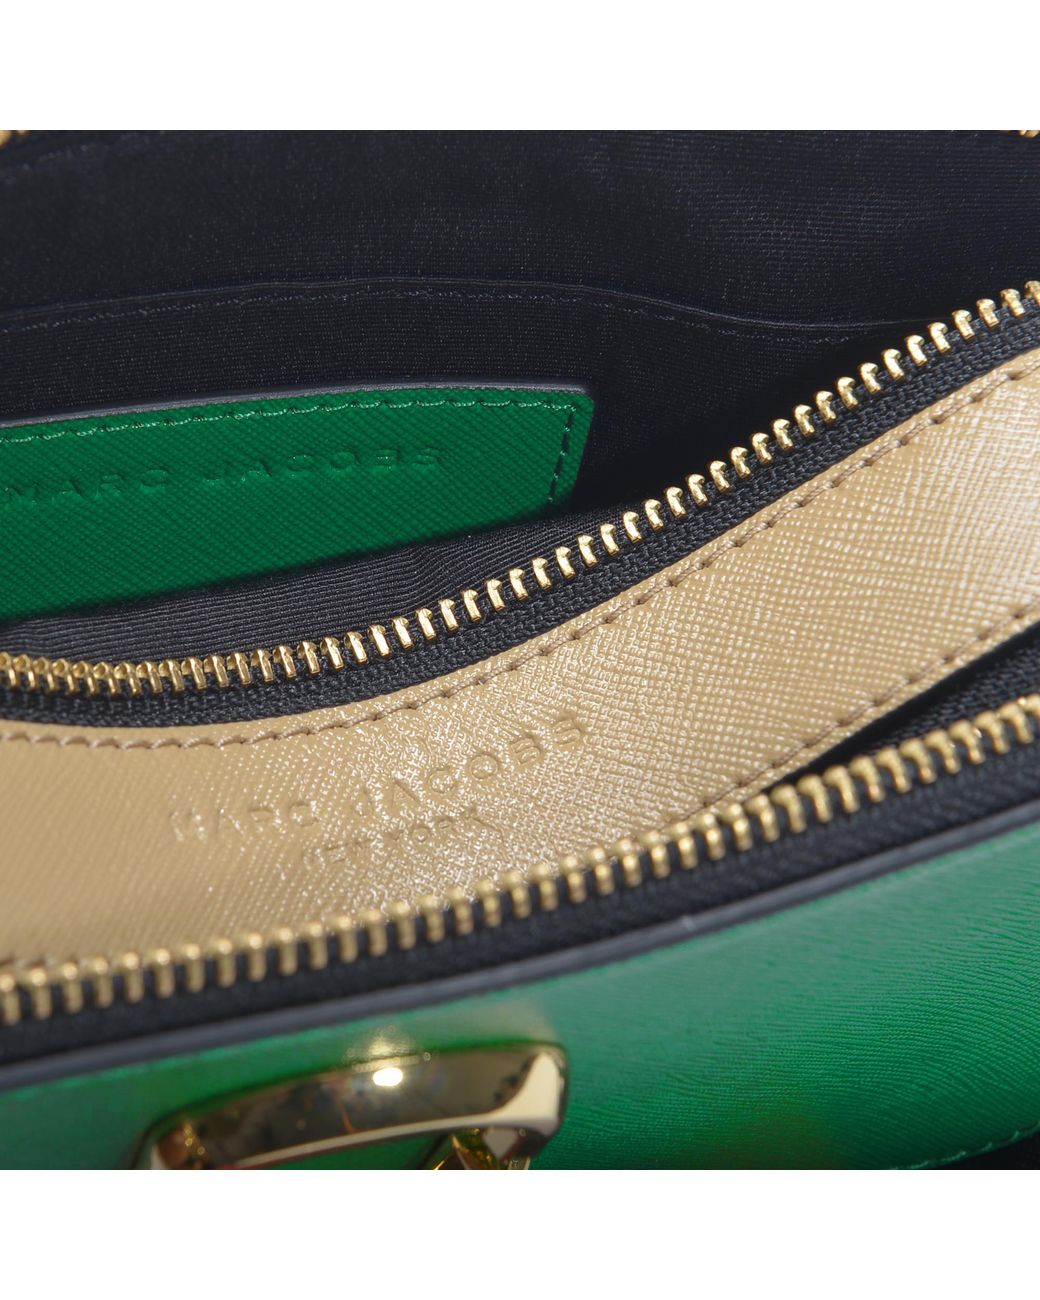 Marc Jacobs Women's Snapshot Cross Body Bag - Pepper Green Multi